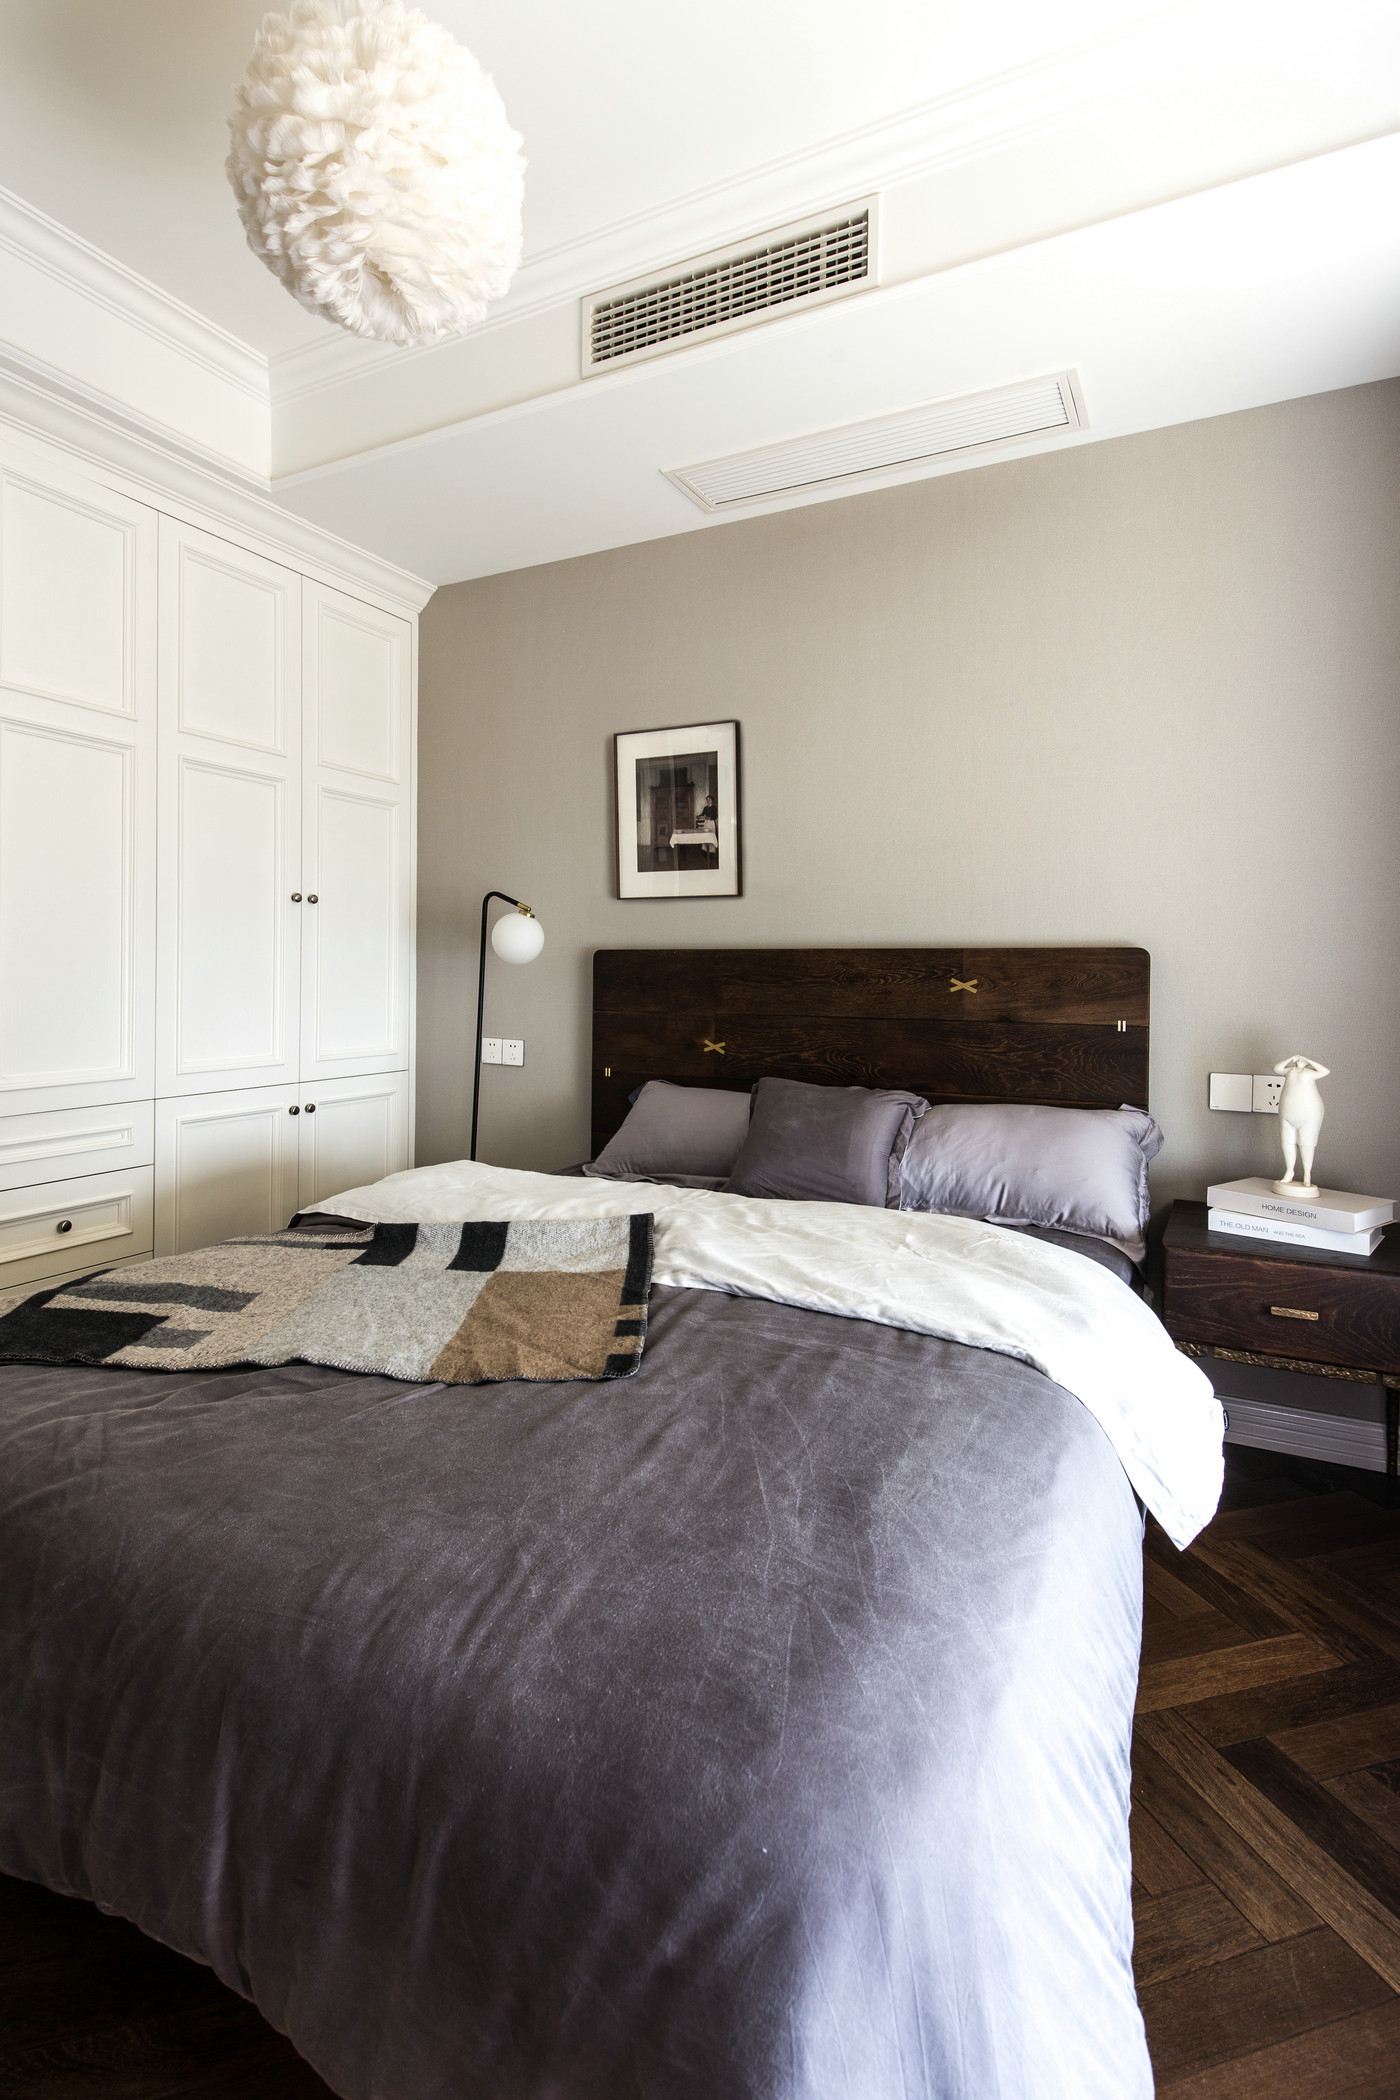 次卧使用深色的木质家具设计，暖色的墙面缓和了深木色带来的压抑。